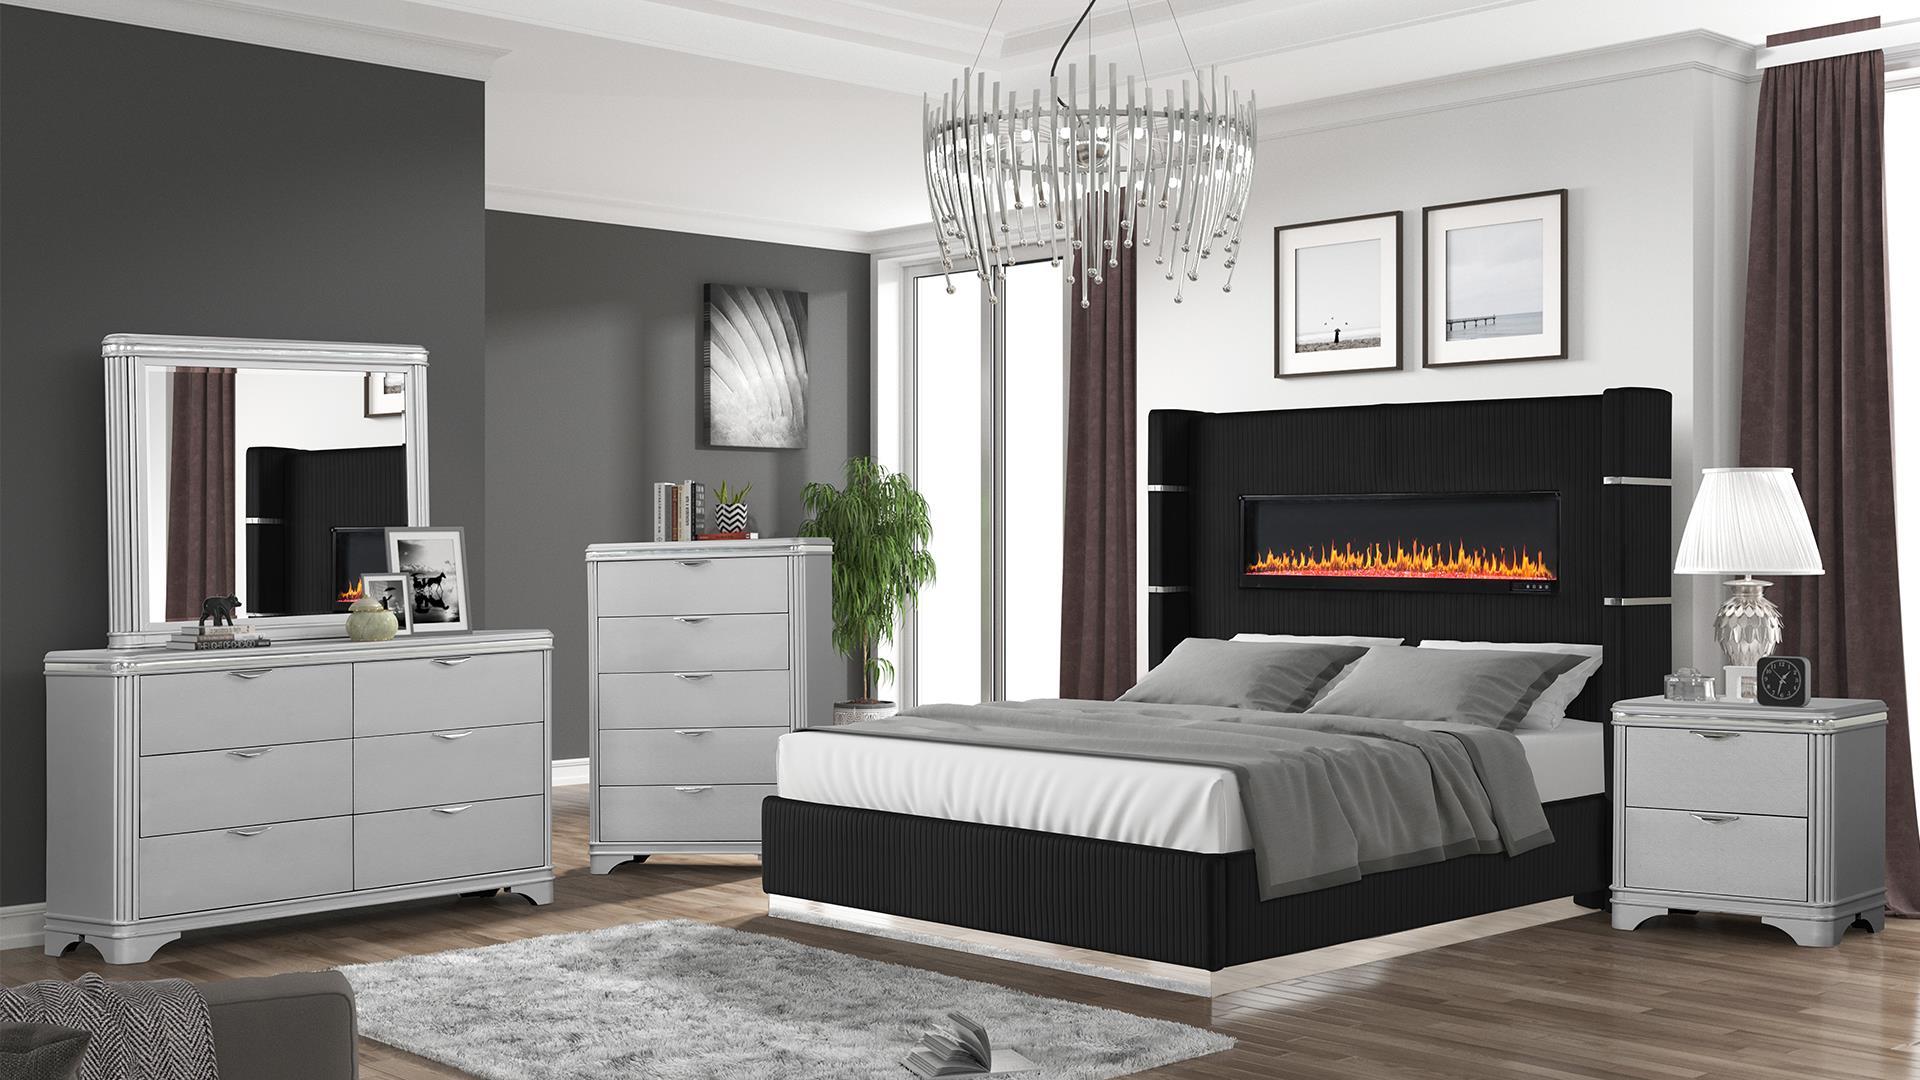 

    
Galaxy Home Furniture LIZELLE Black Platform Bed Black LIZELLE -BLK-EK
